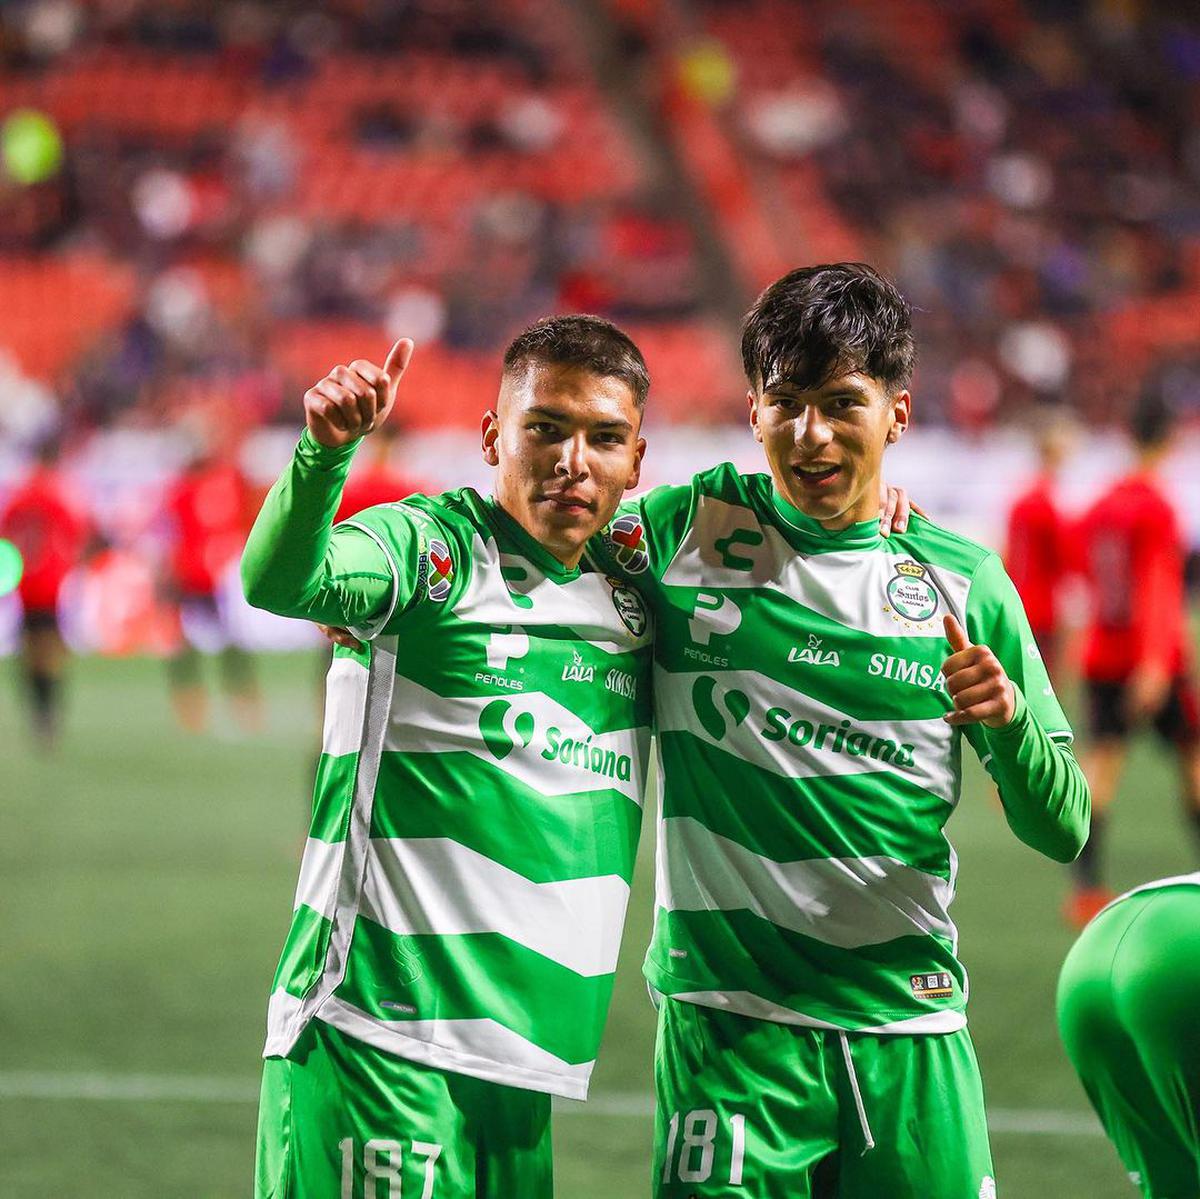 El jugador 187 | El jugador de Santos Laguna jugó  su primer partido frente a Tijuana. Fuente: Instagram @clubsantos